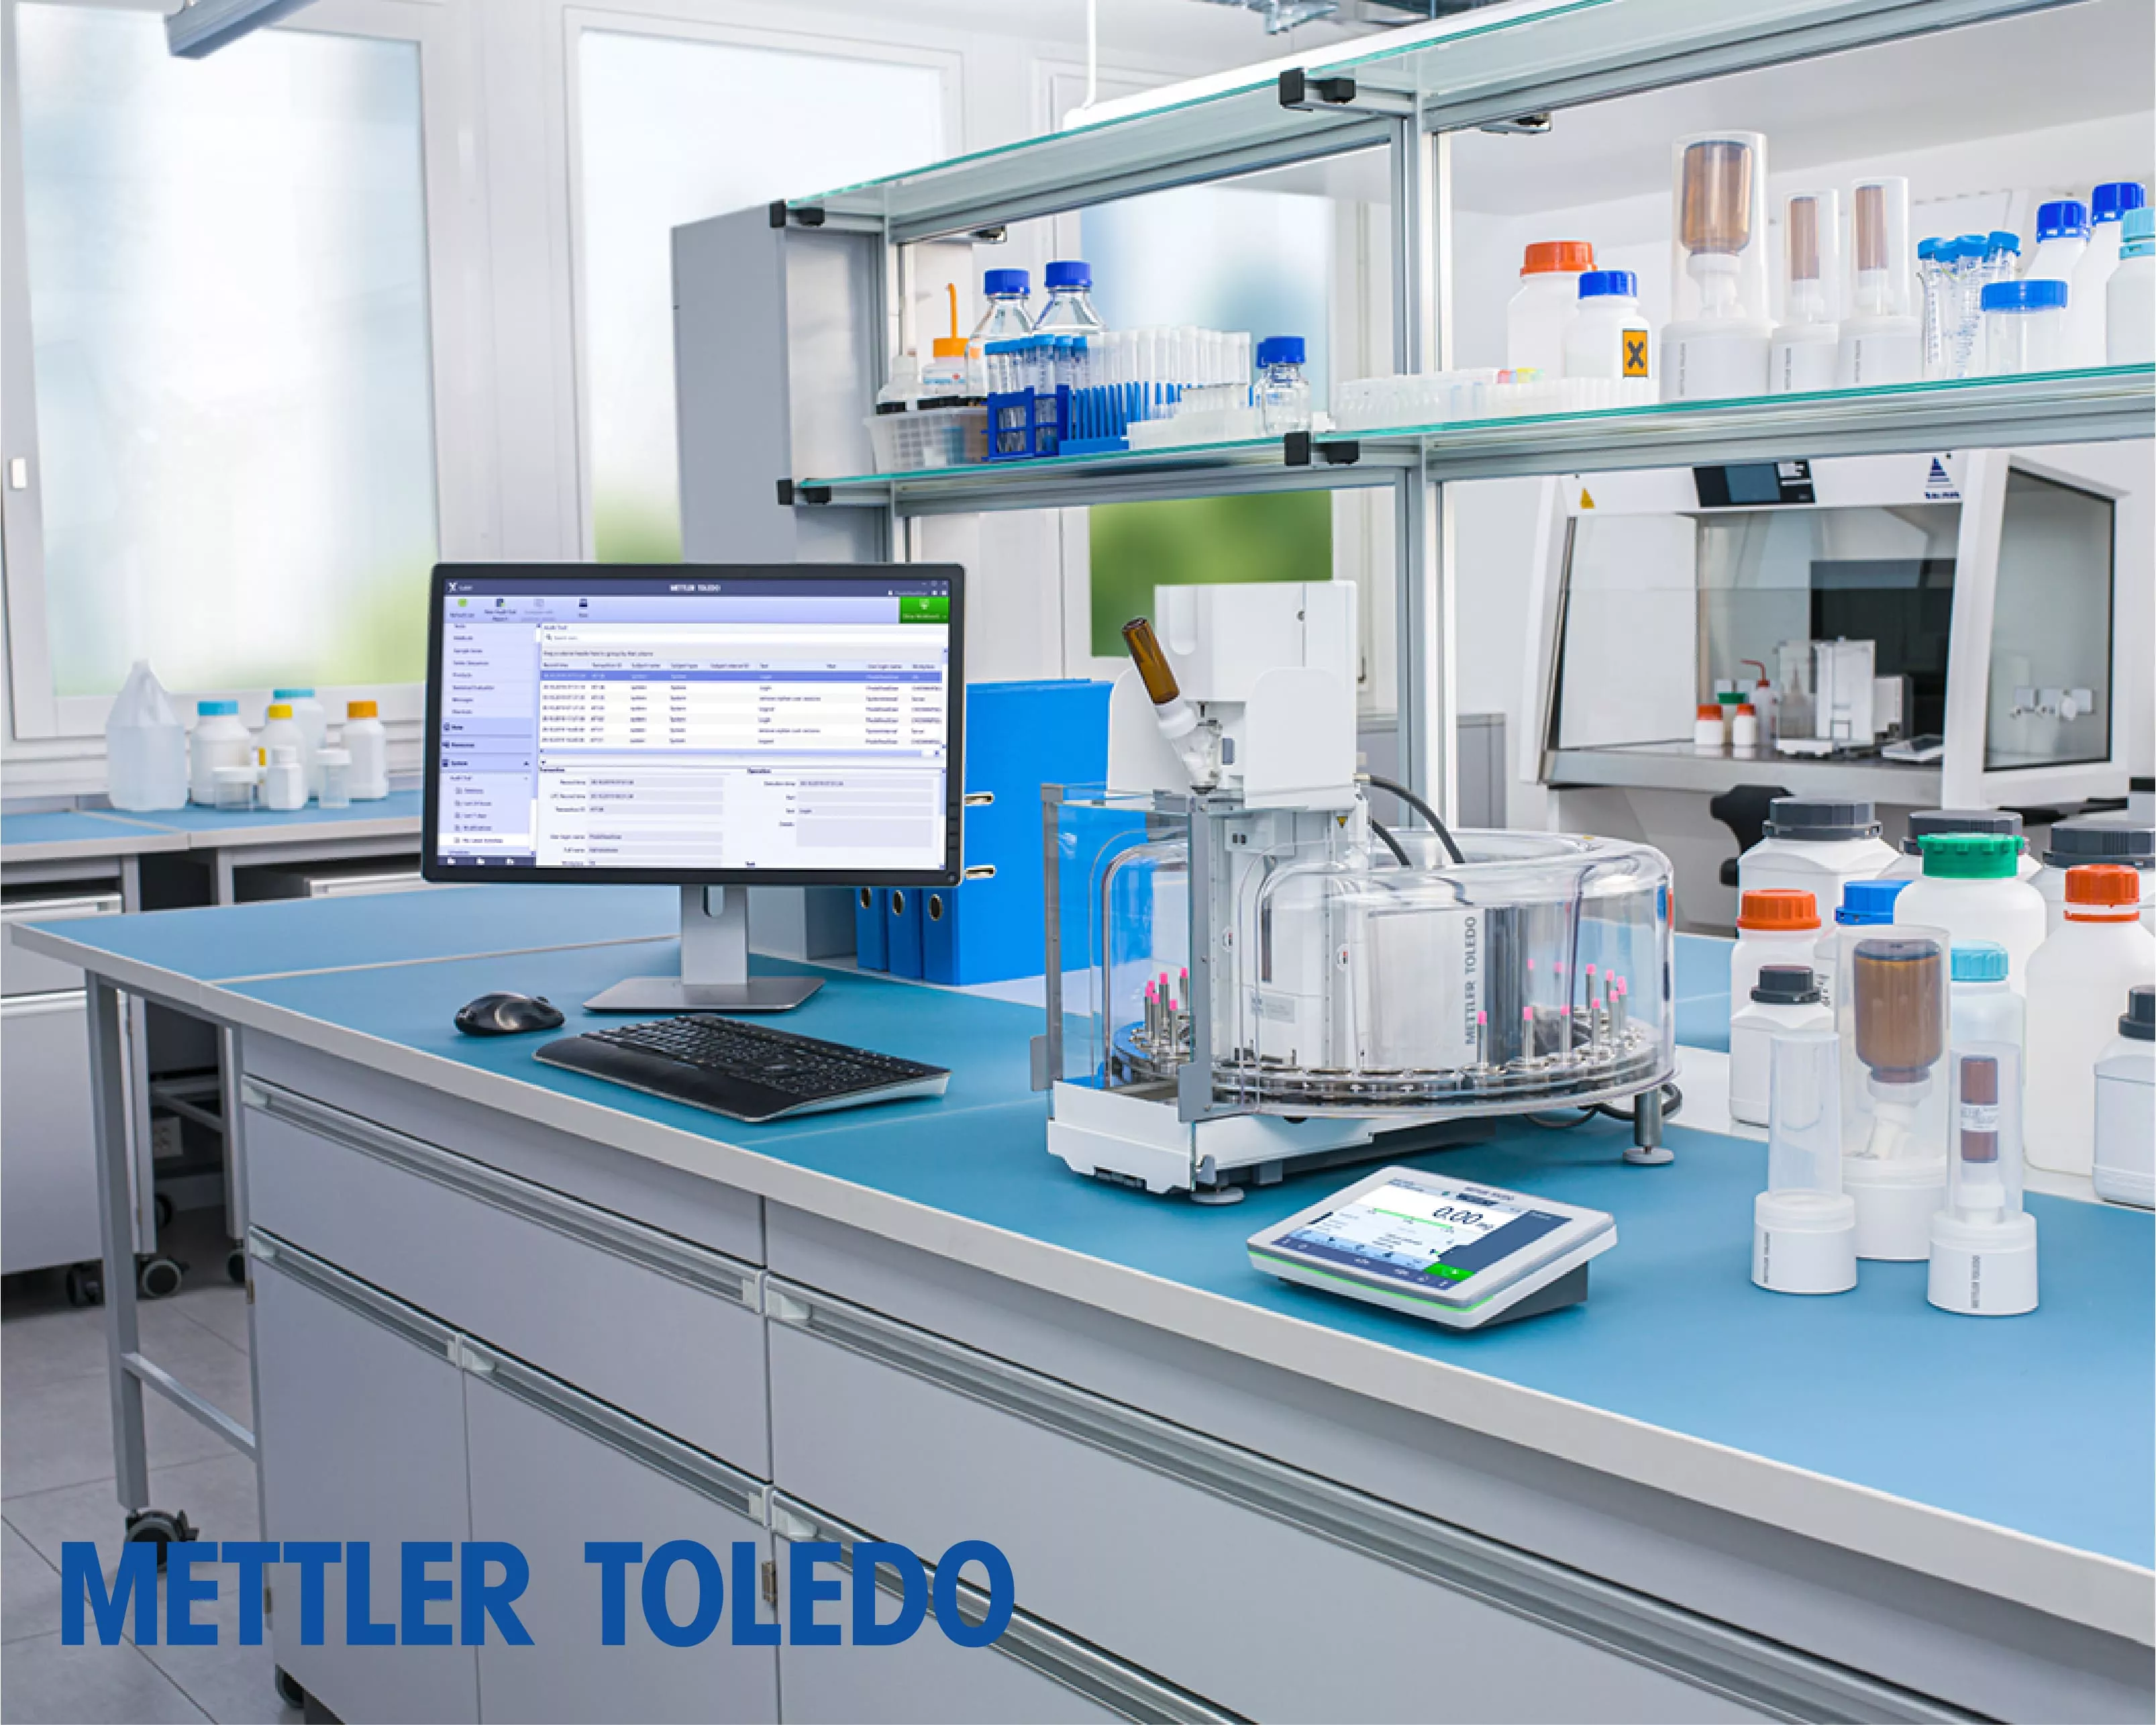 Mettler Toledo LabX Software